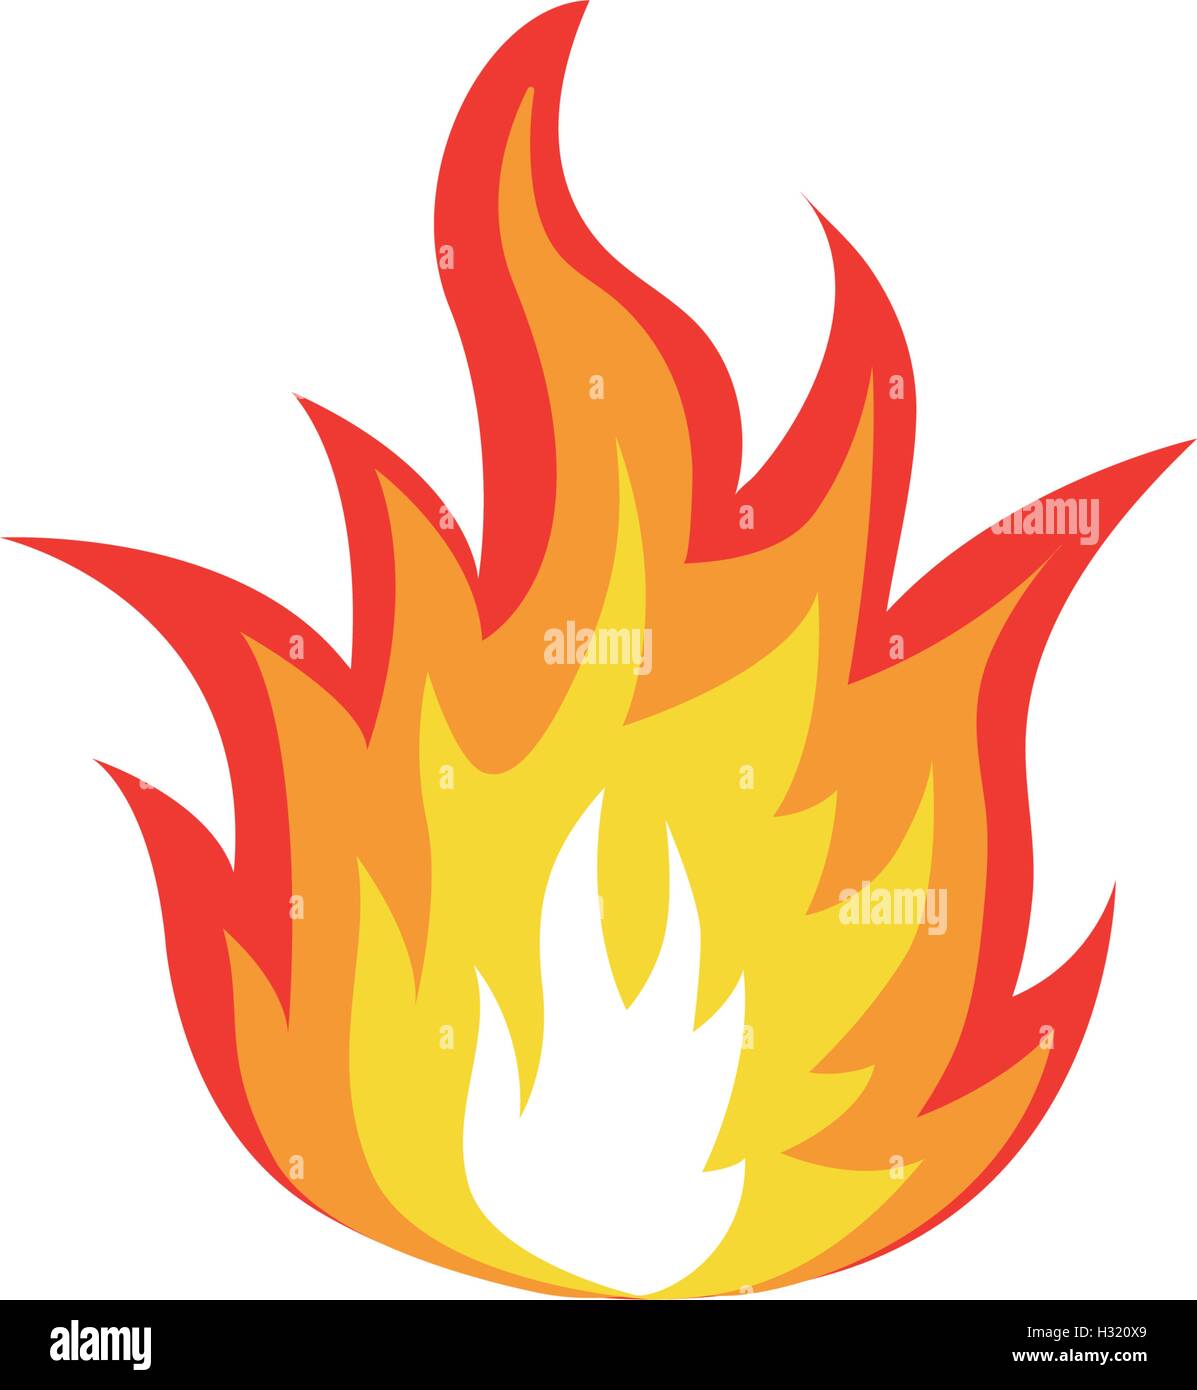 Abstrakt rot-orange Farbe Feuer Flamme Logo auf weißem Hintergrund isoliert. Lagerfeuer-Logo. Scharfes Essen-Symbol. Hitze-Symbol. Heiße Energie Zeichen. Vektor-Illustration. Stock Vektor